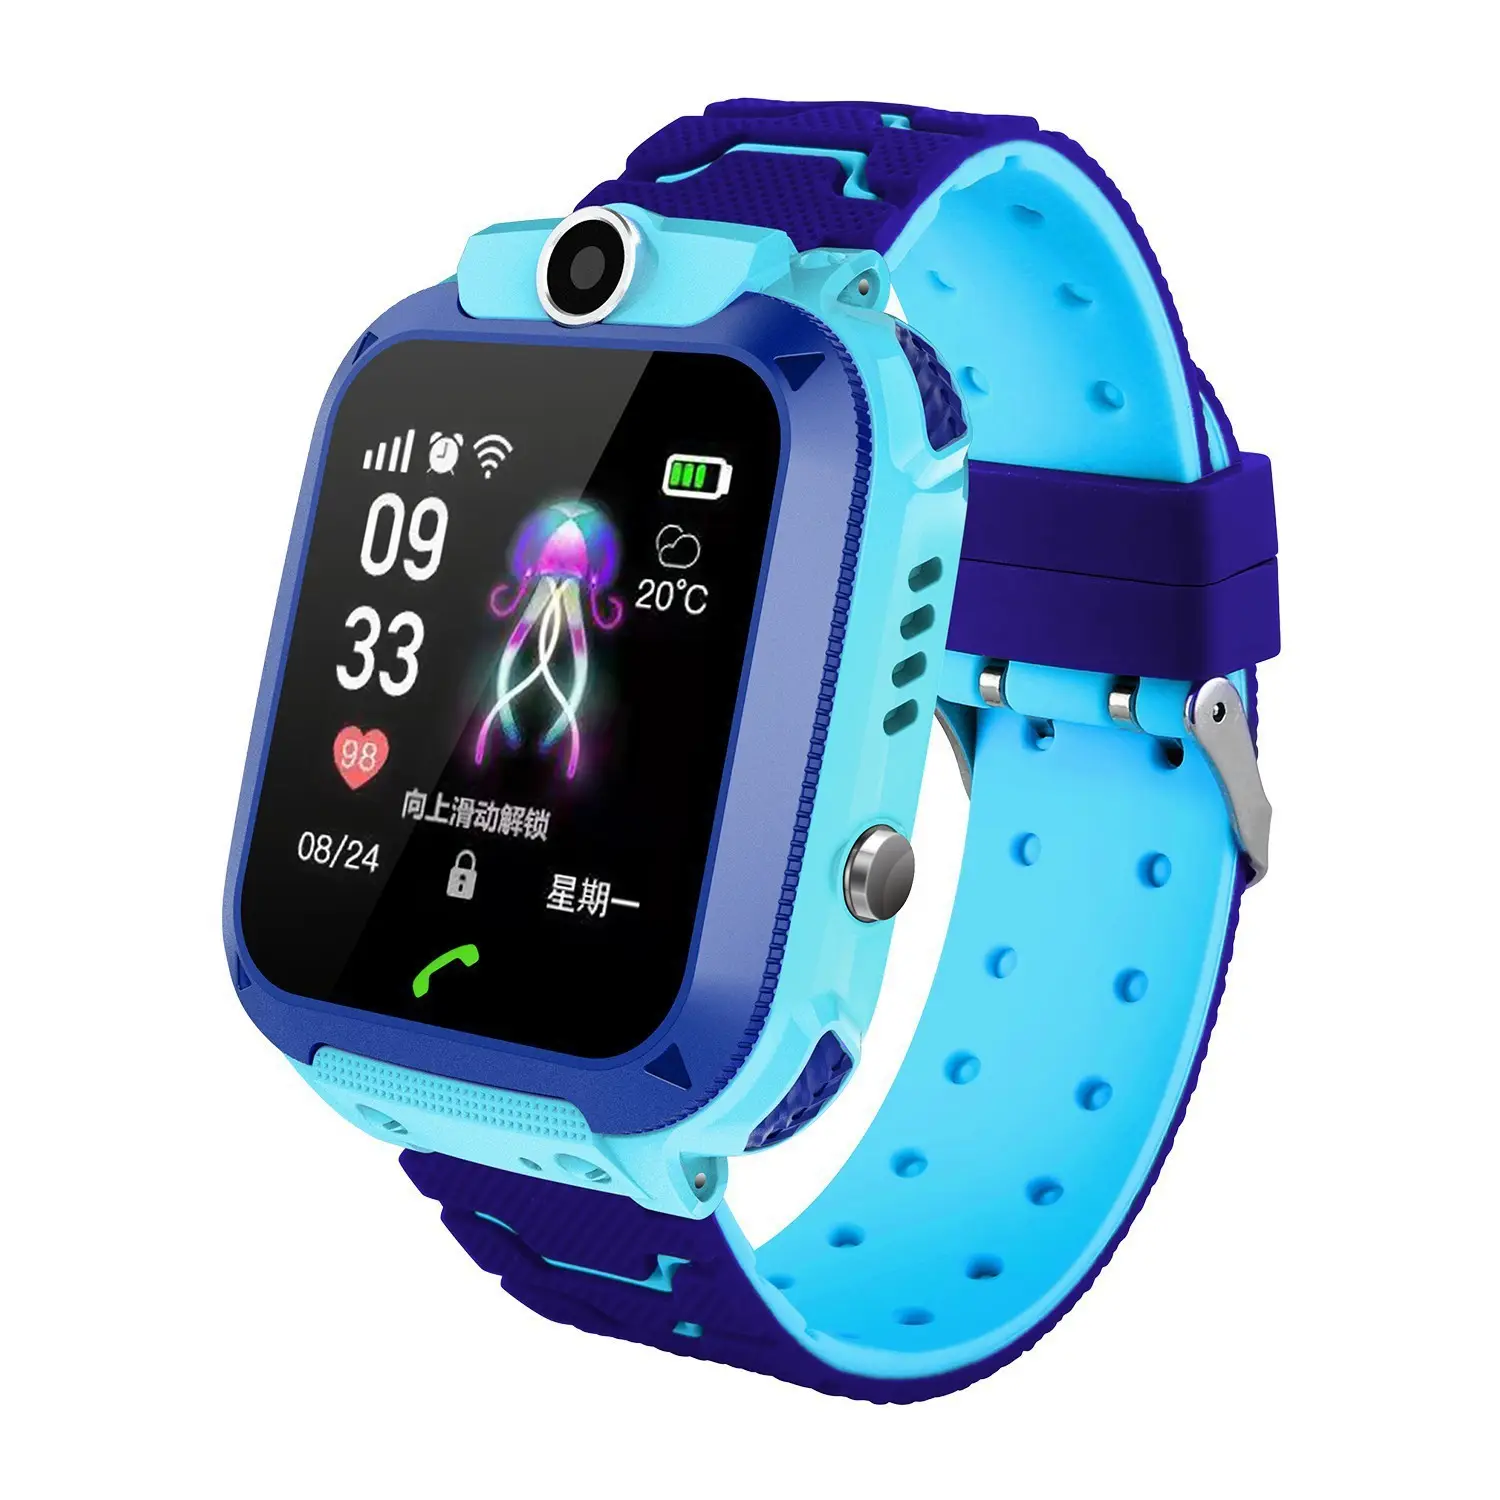 Q12 smartwatch für kinder Kinder-Simkarte LBS Standort für Geschenk Jungen und Mädchen Kinder smartwatch-Uhren Q19 smartwatches